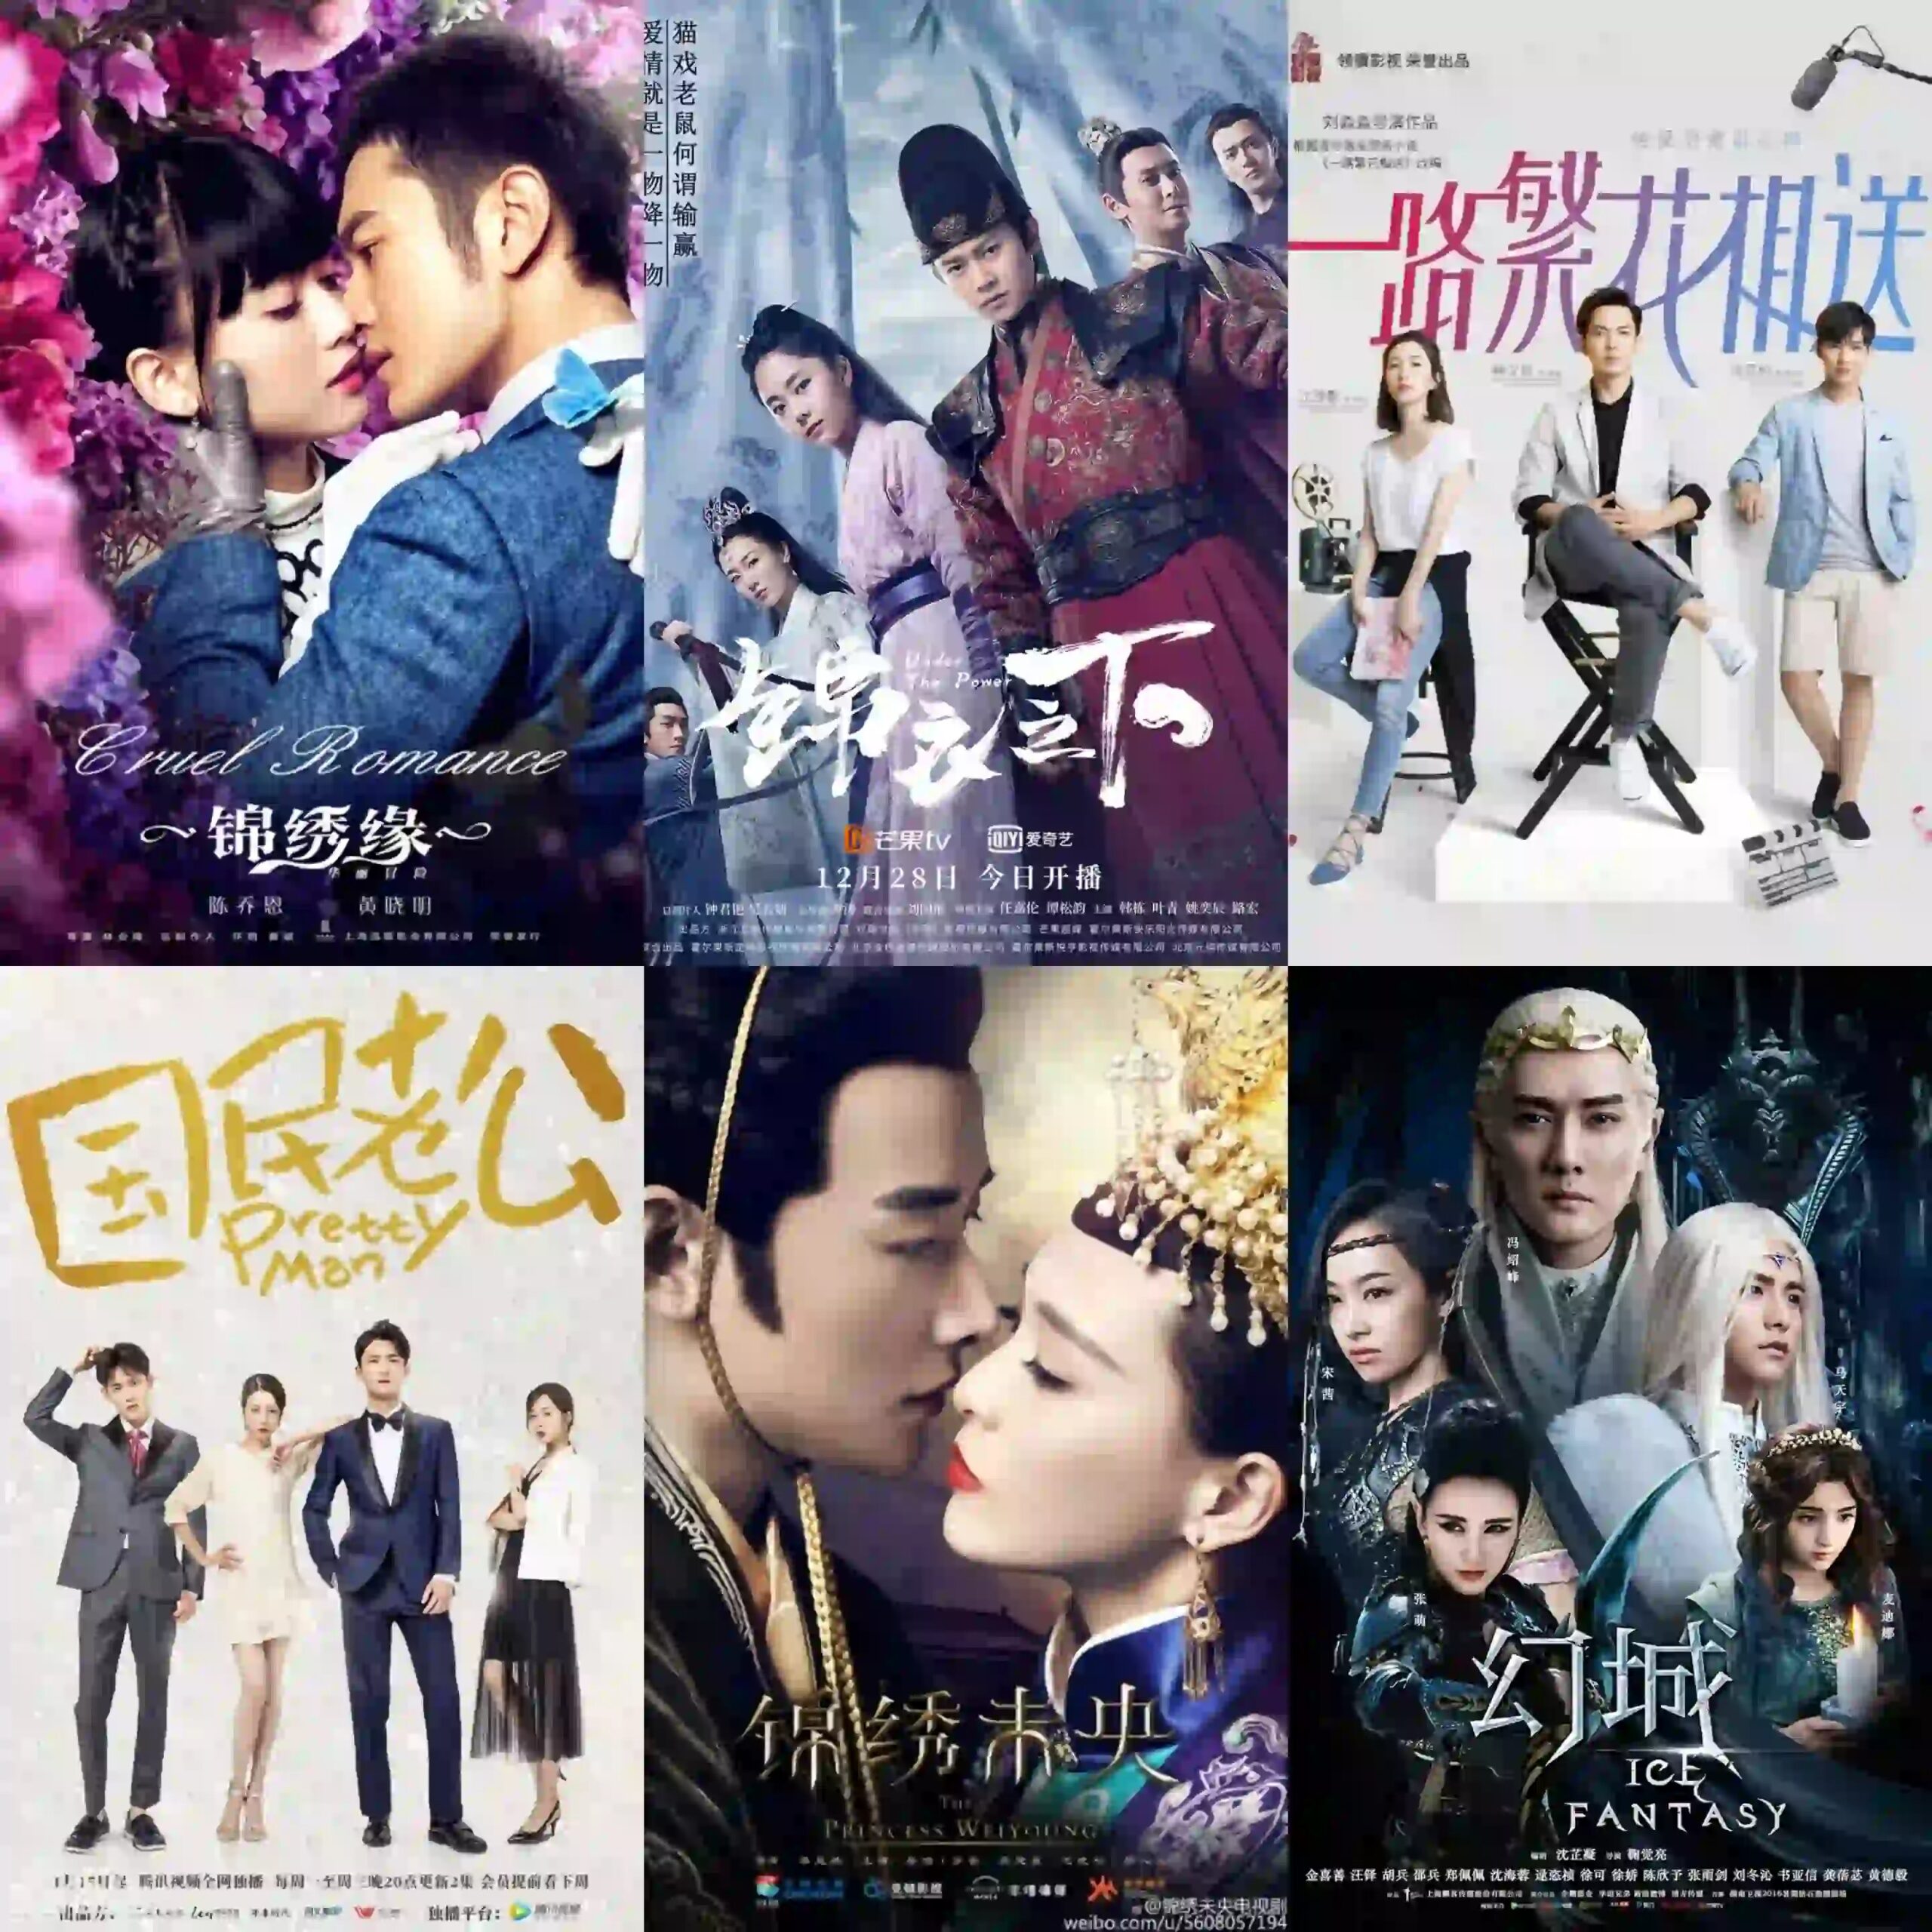 Chinese drama based on novel/books